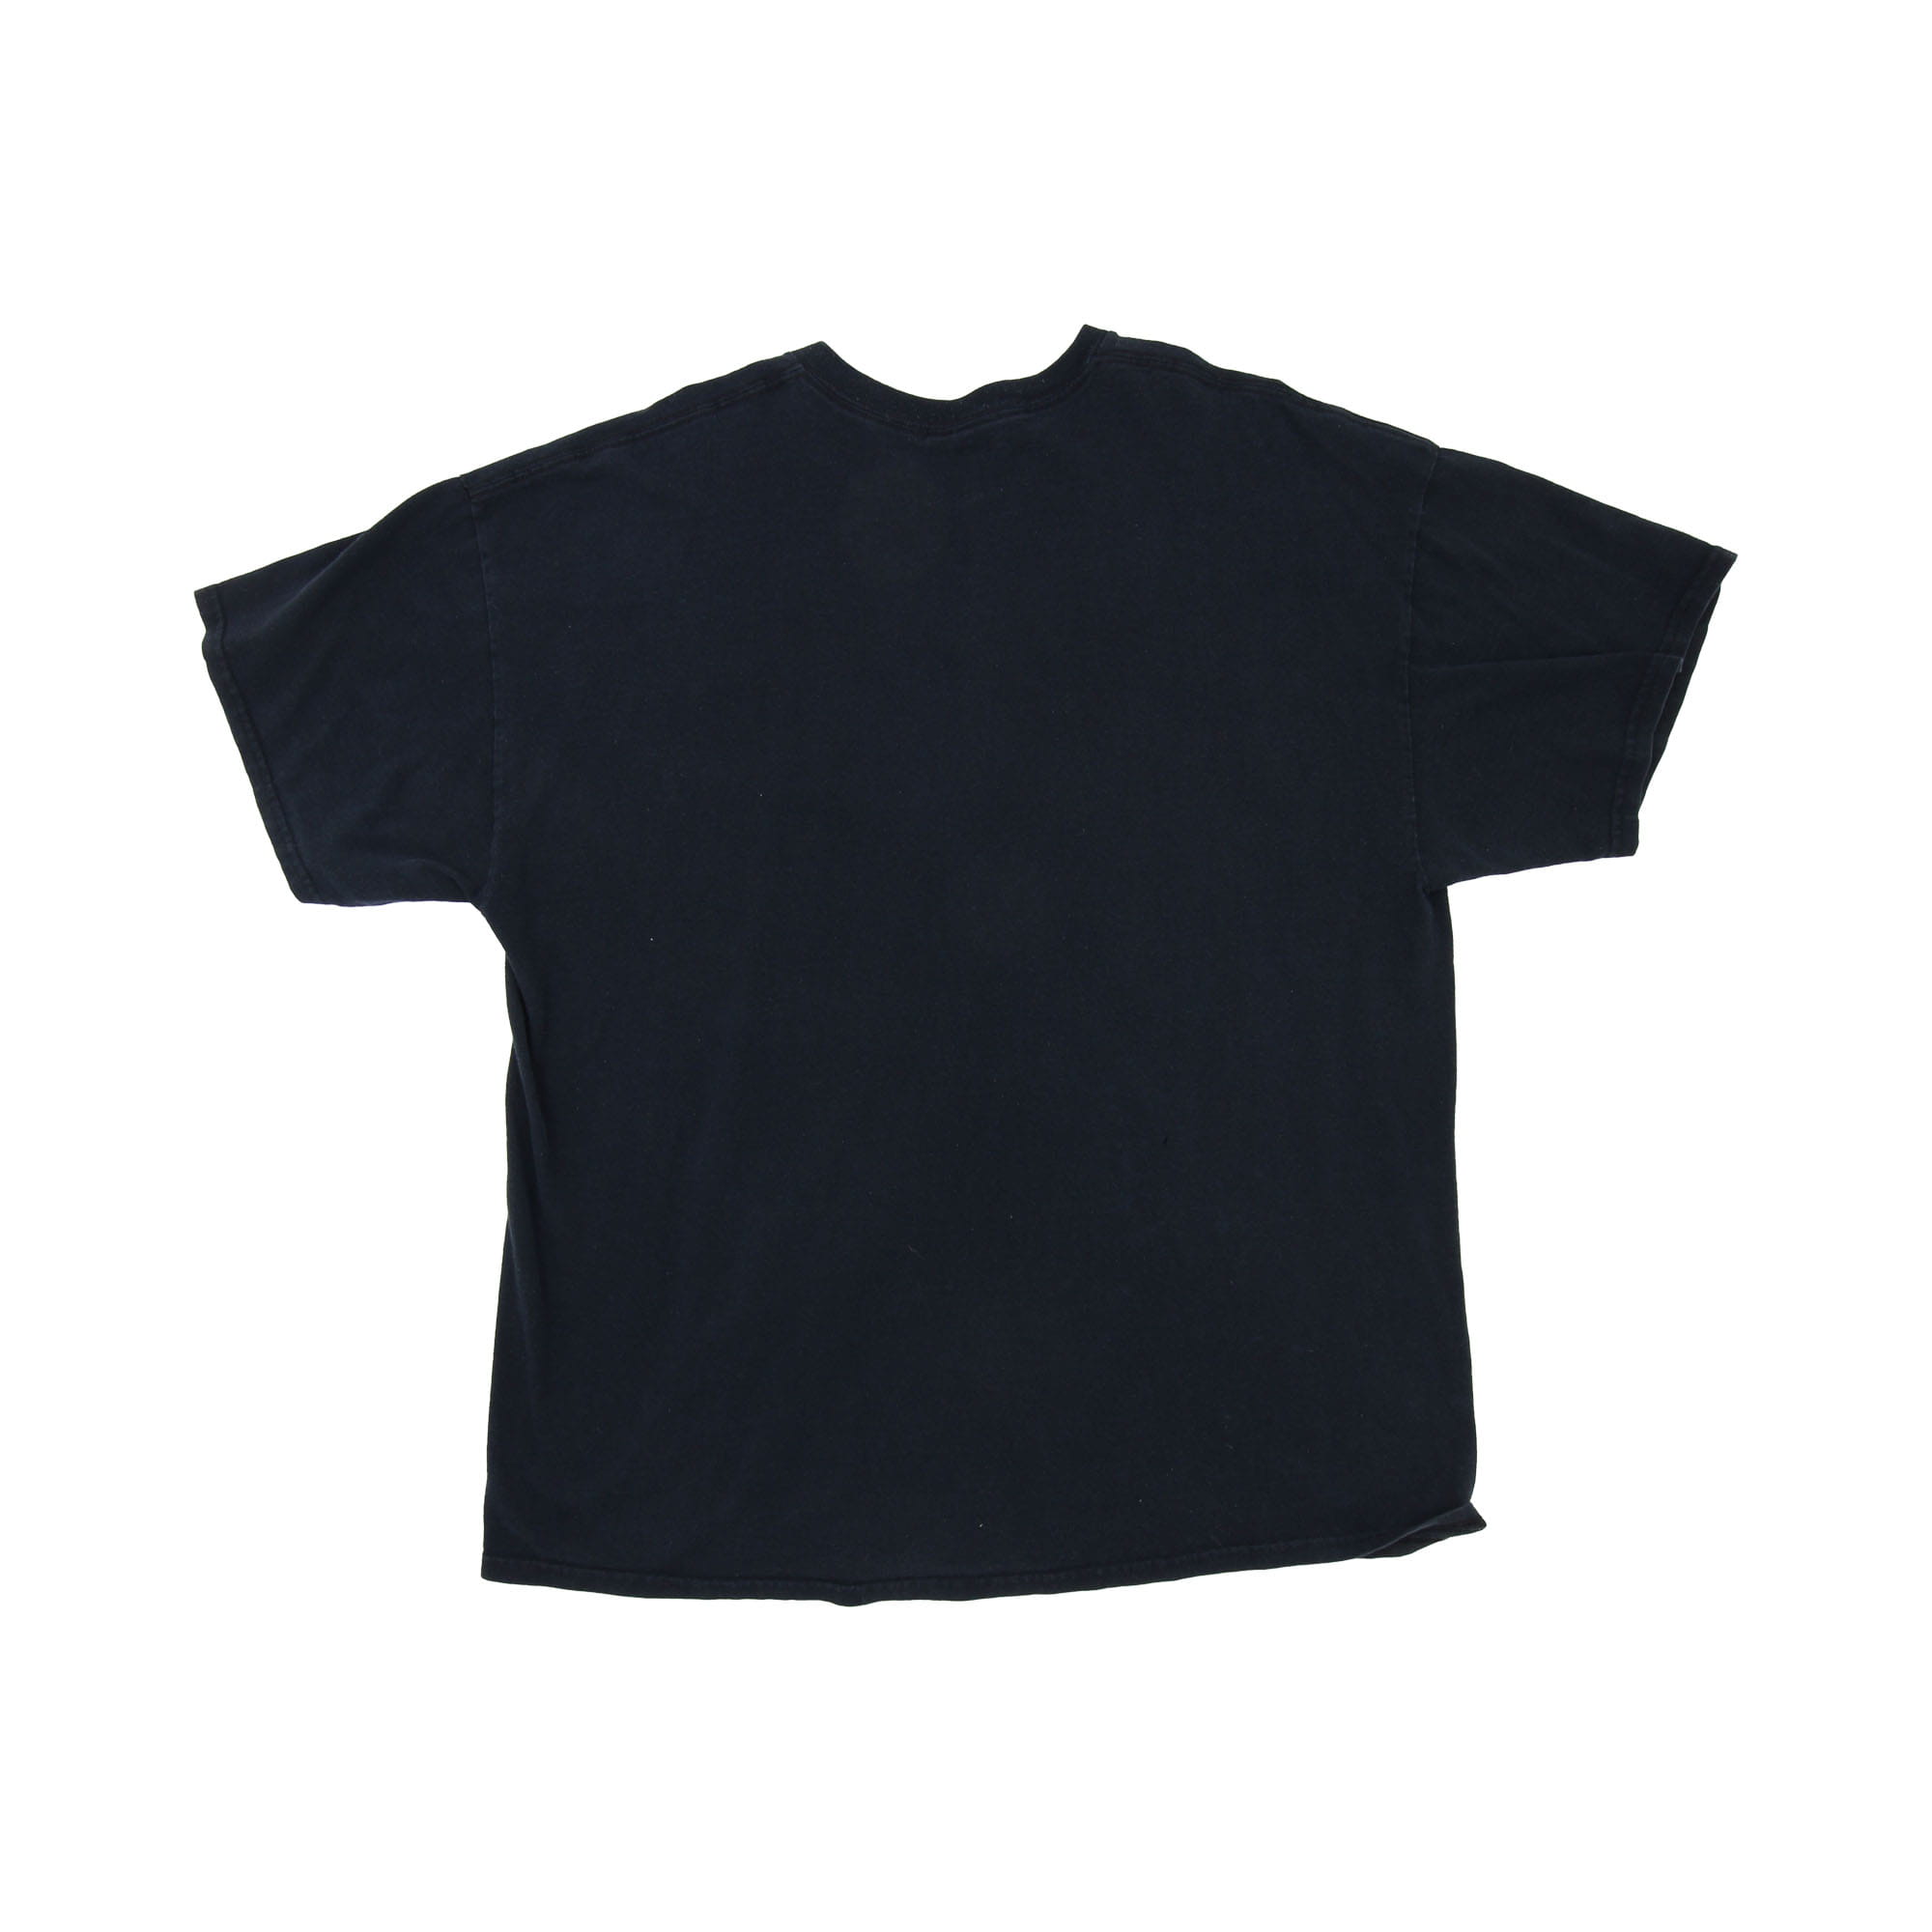 No Name T-Shirt Black -  XL